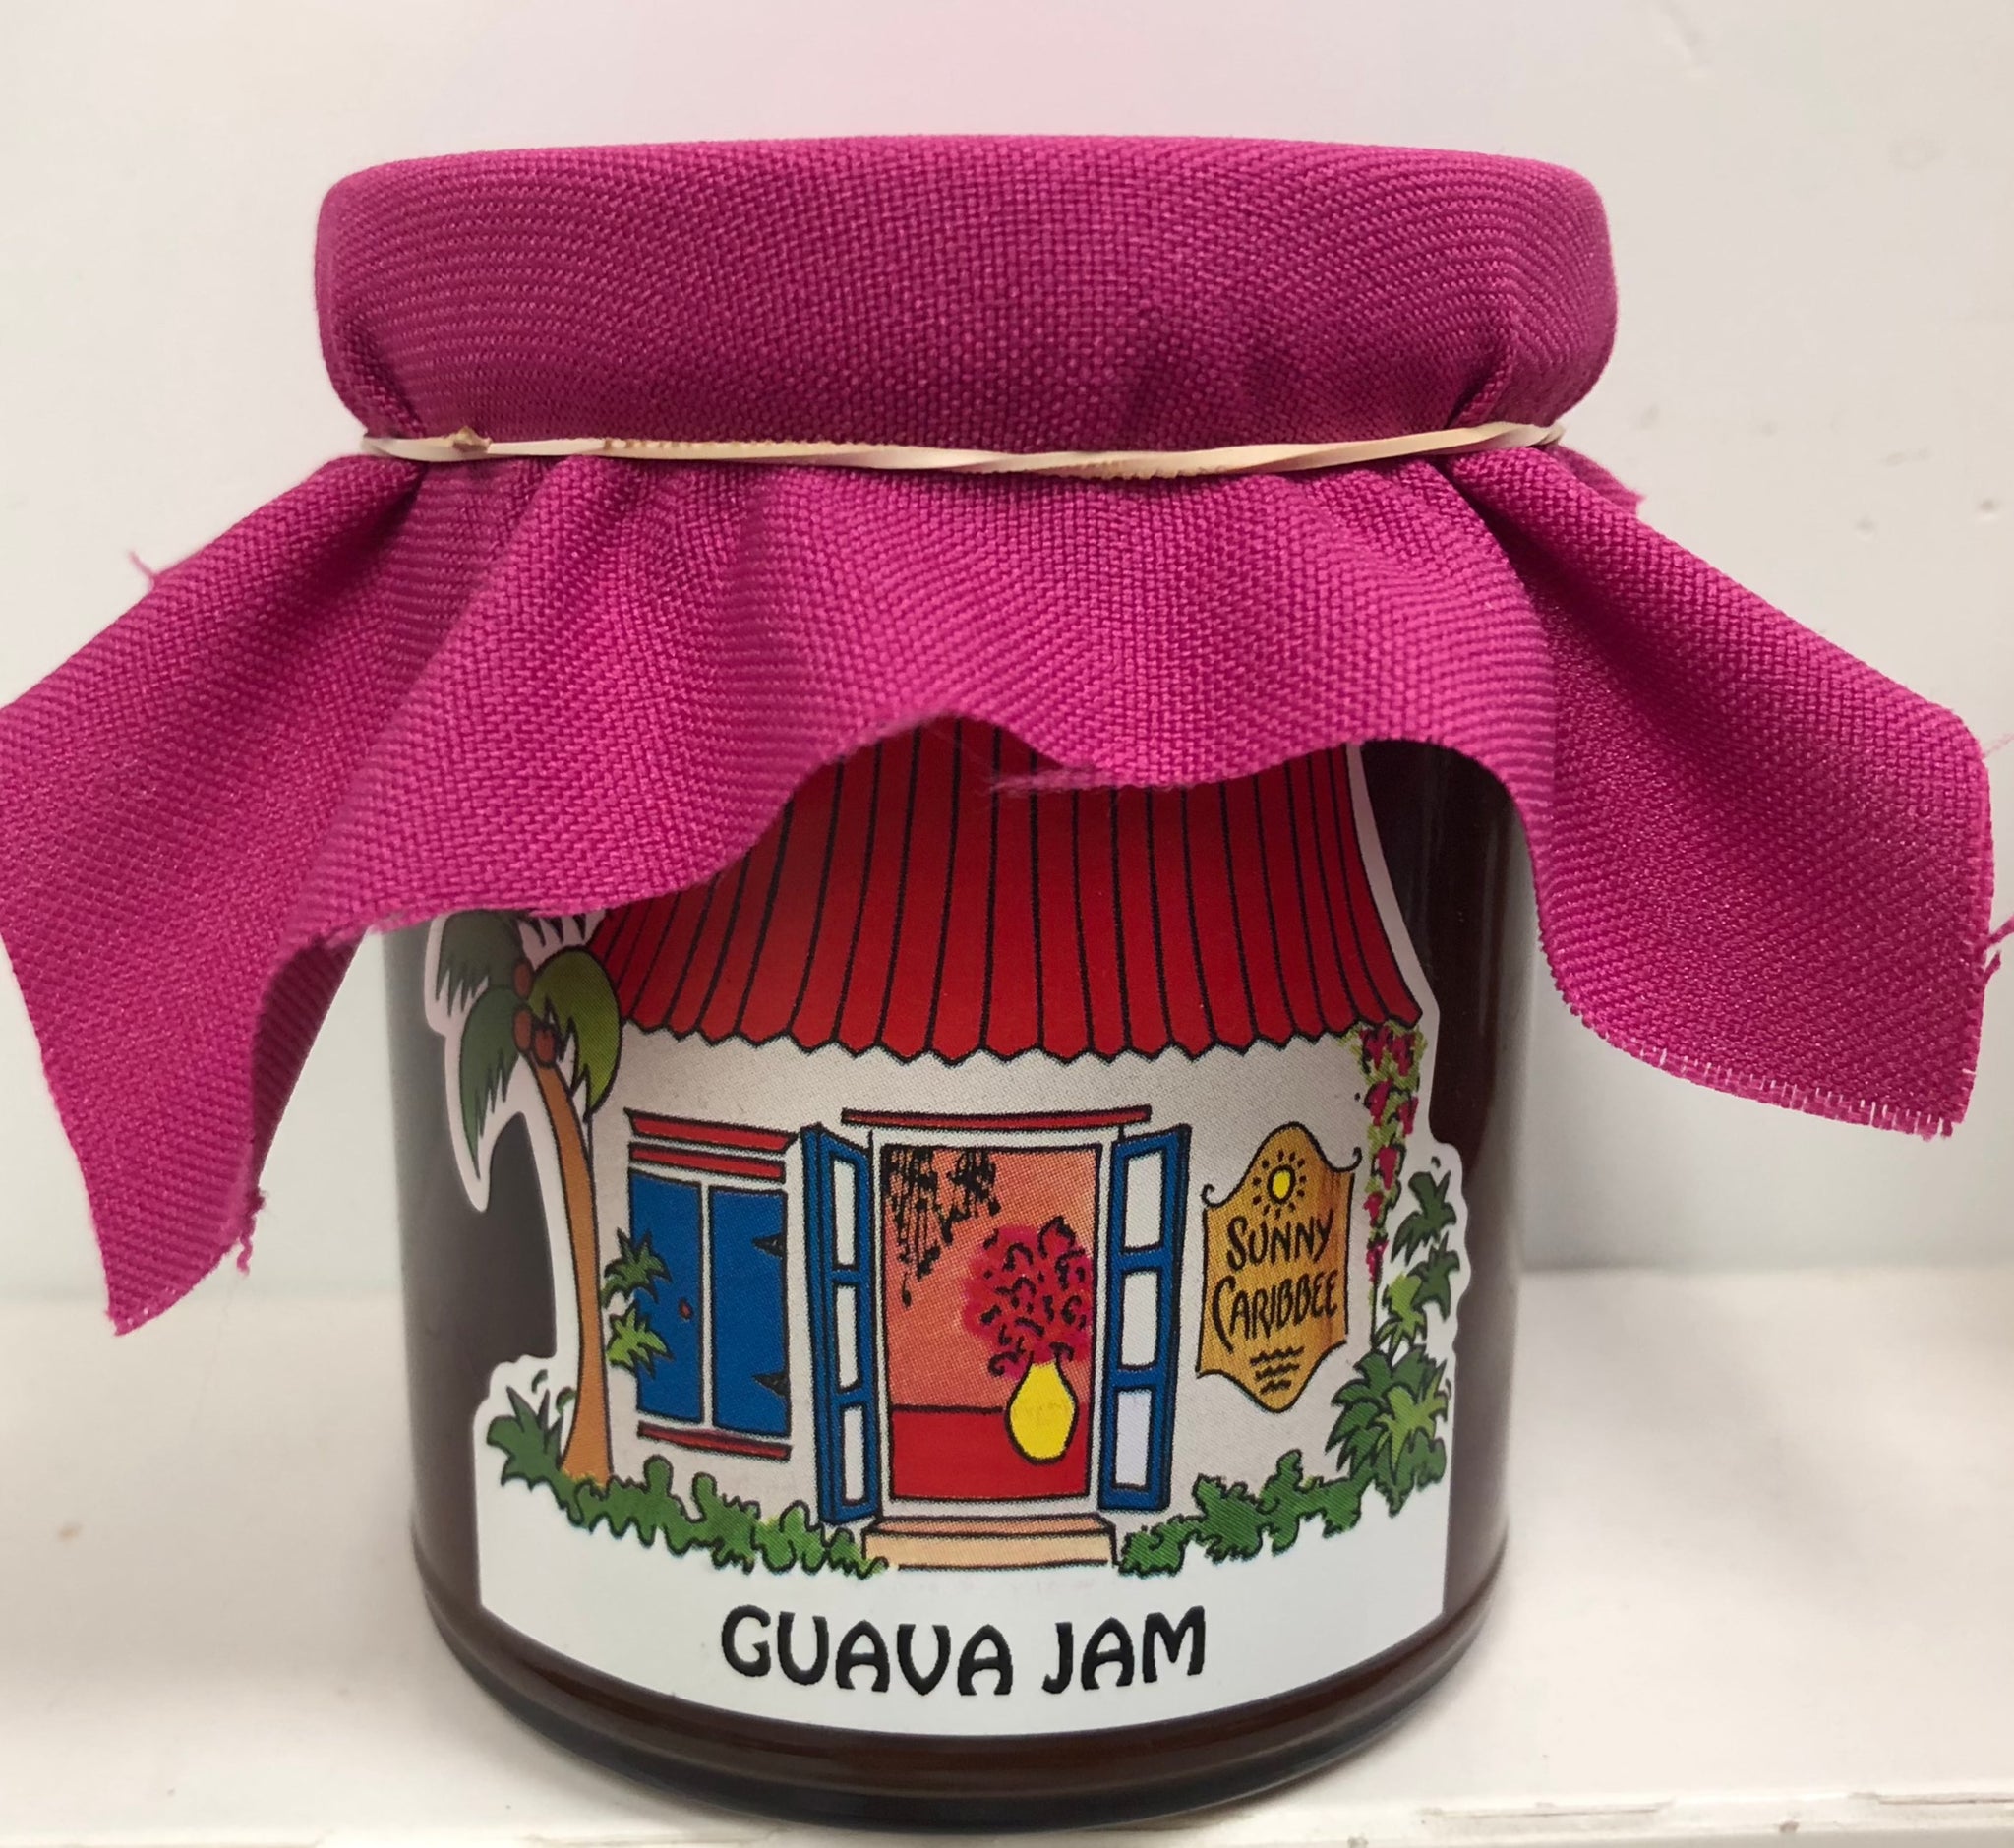 Guava Jam from Sunny Caribbee